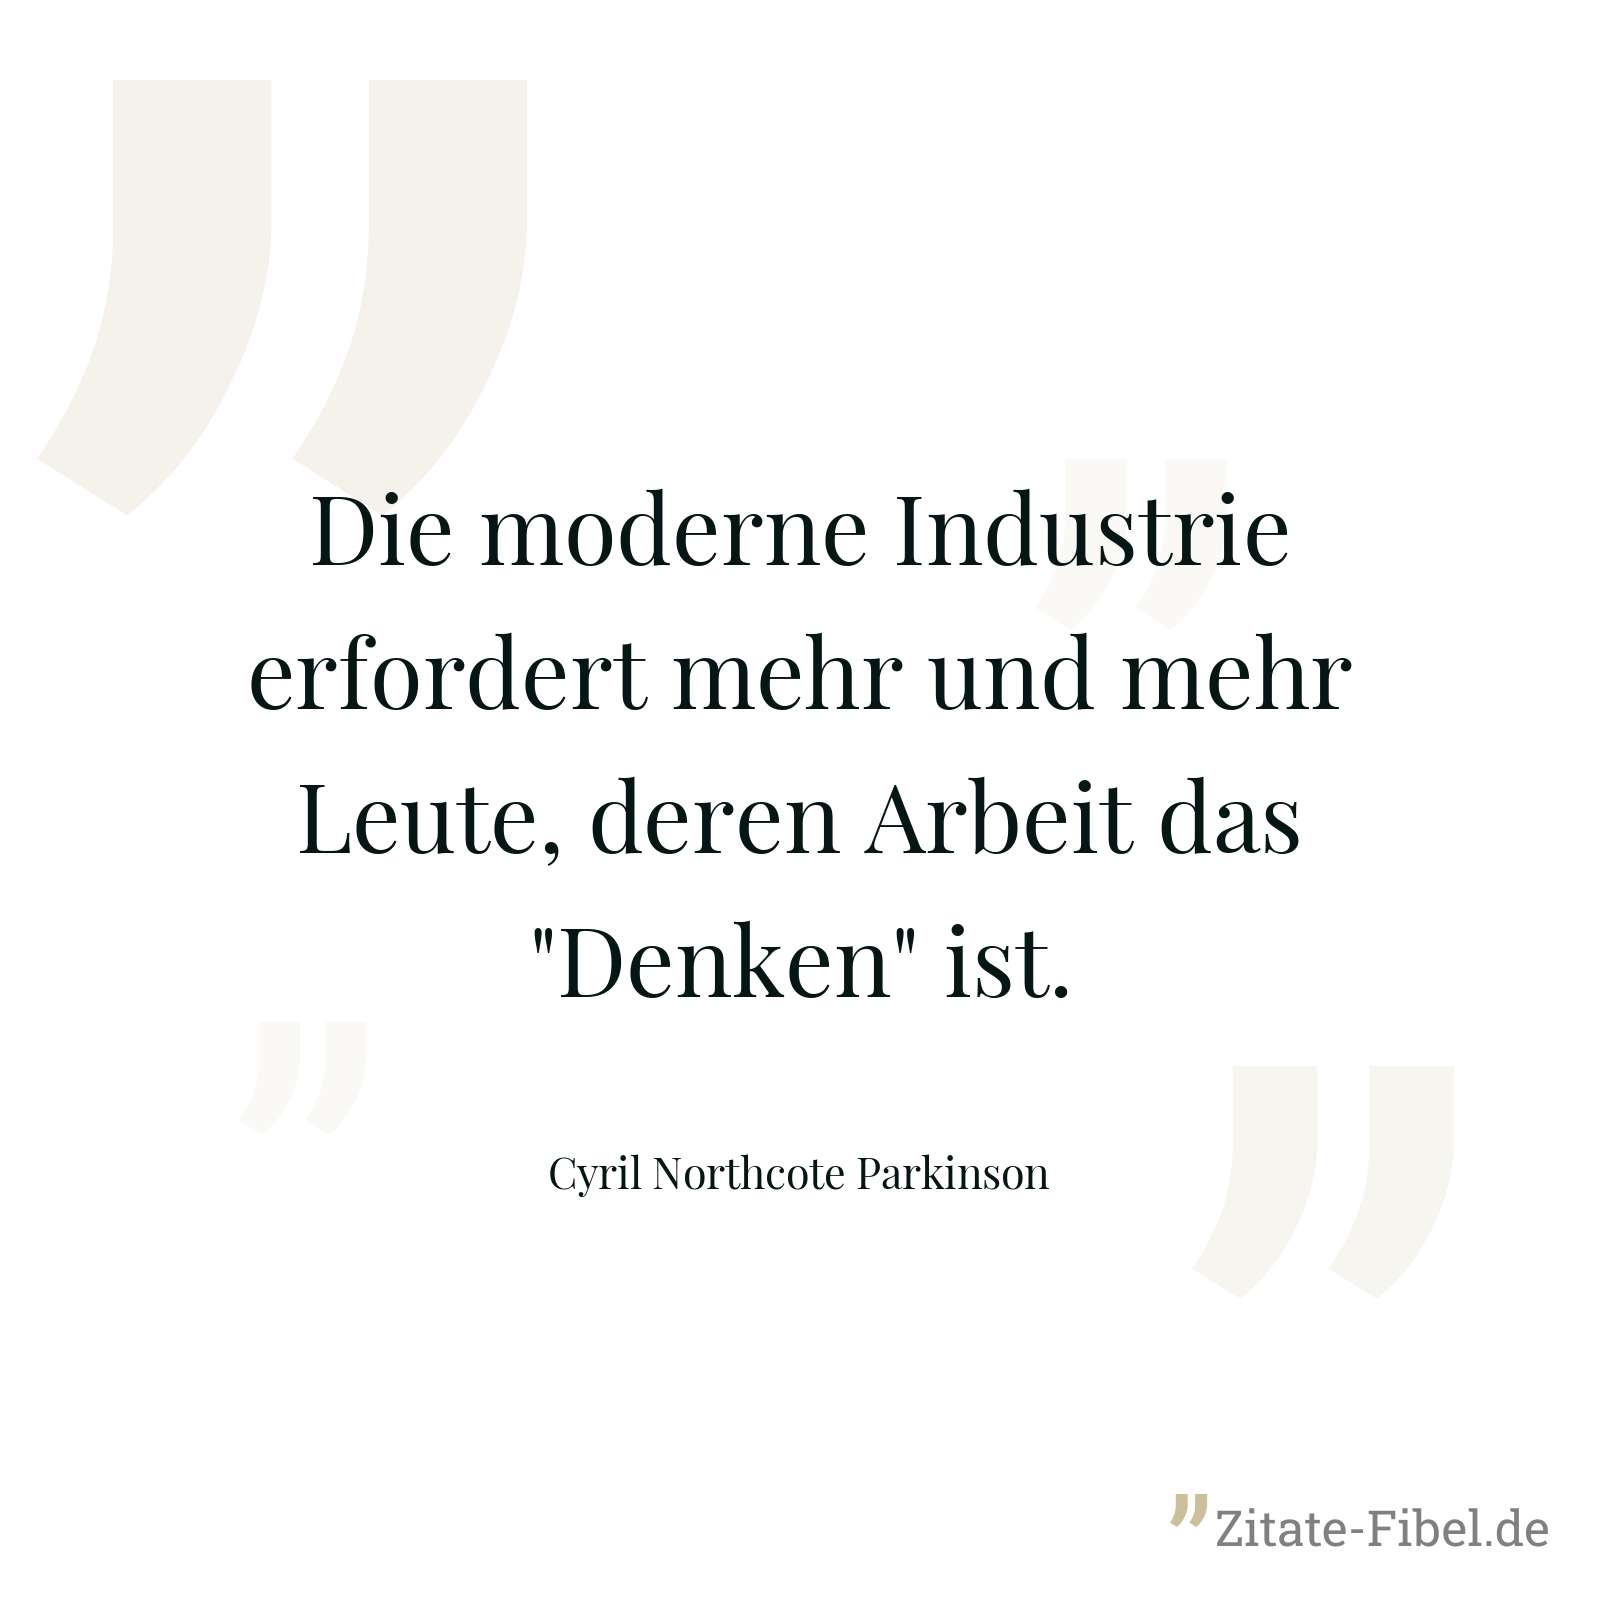 Die moderne Industrie erfordert mehr und mehr Leute, deren Arbeit das "Denken" ist. - Cyril Northcote Parkinson